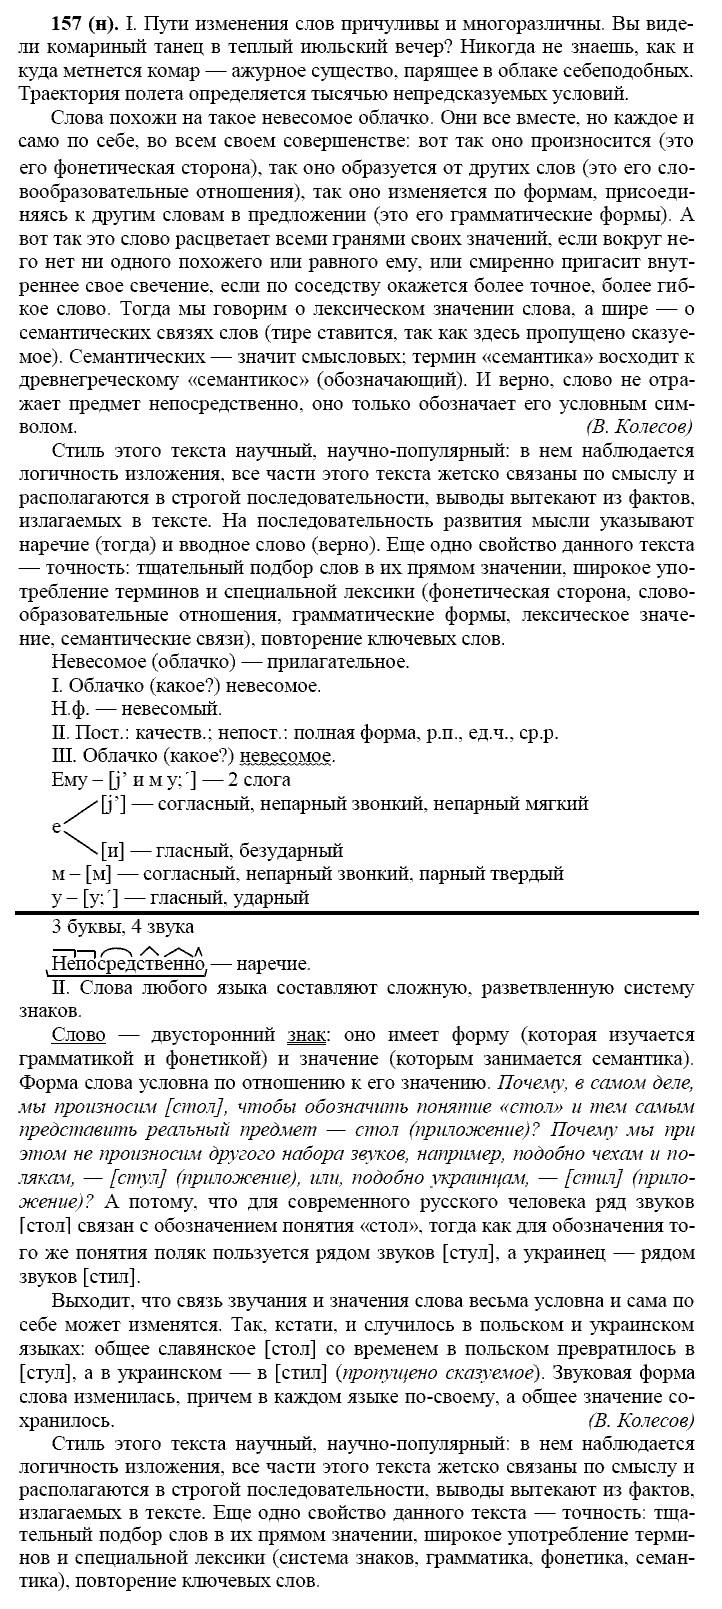 Русский язык, 11 класс, Власенков, Рыбченков, 2009-2014, задание: 157 (н)